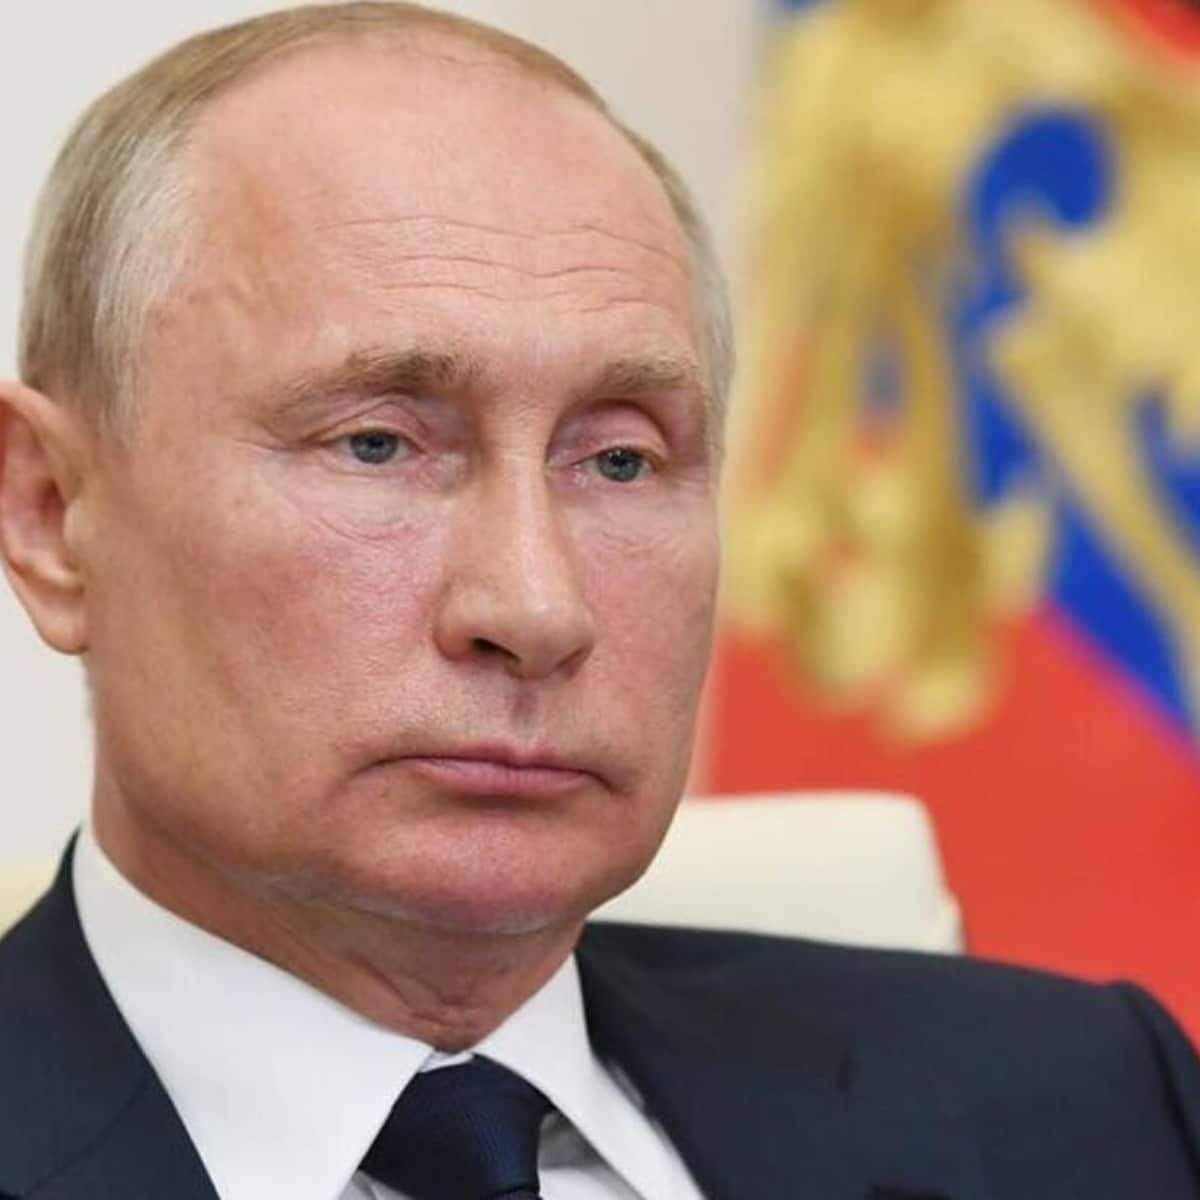 Vladimir Putin has Parkinson